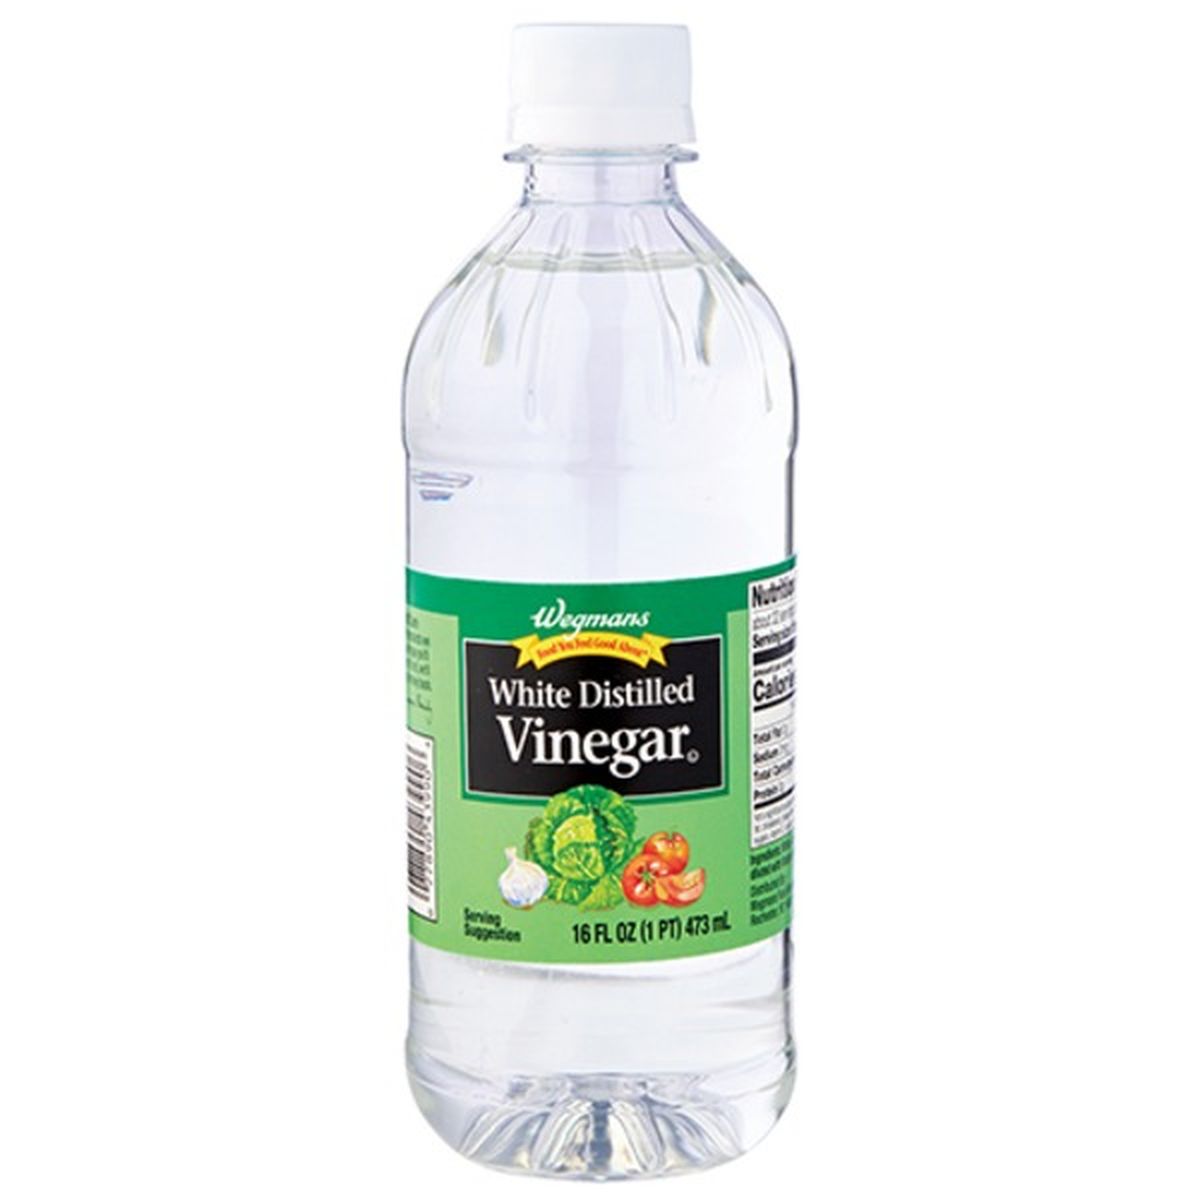 Calories in Wegmans White Distilled Vinegar